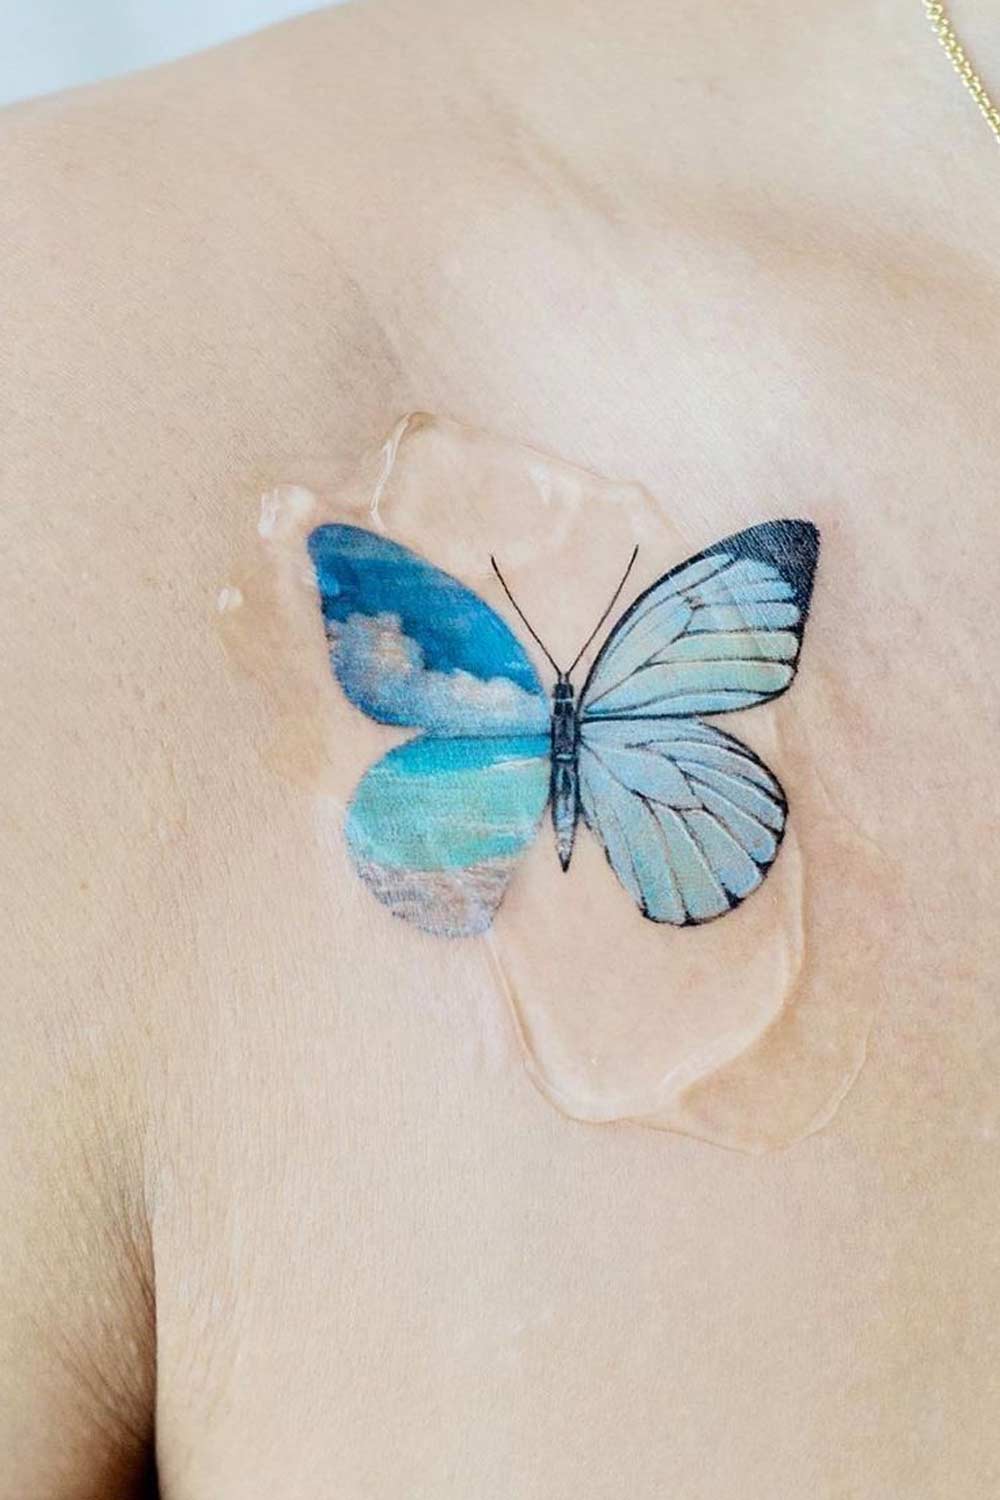 Half Landscape Butterfly Tattoo